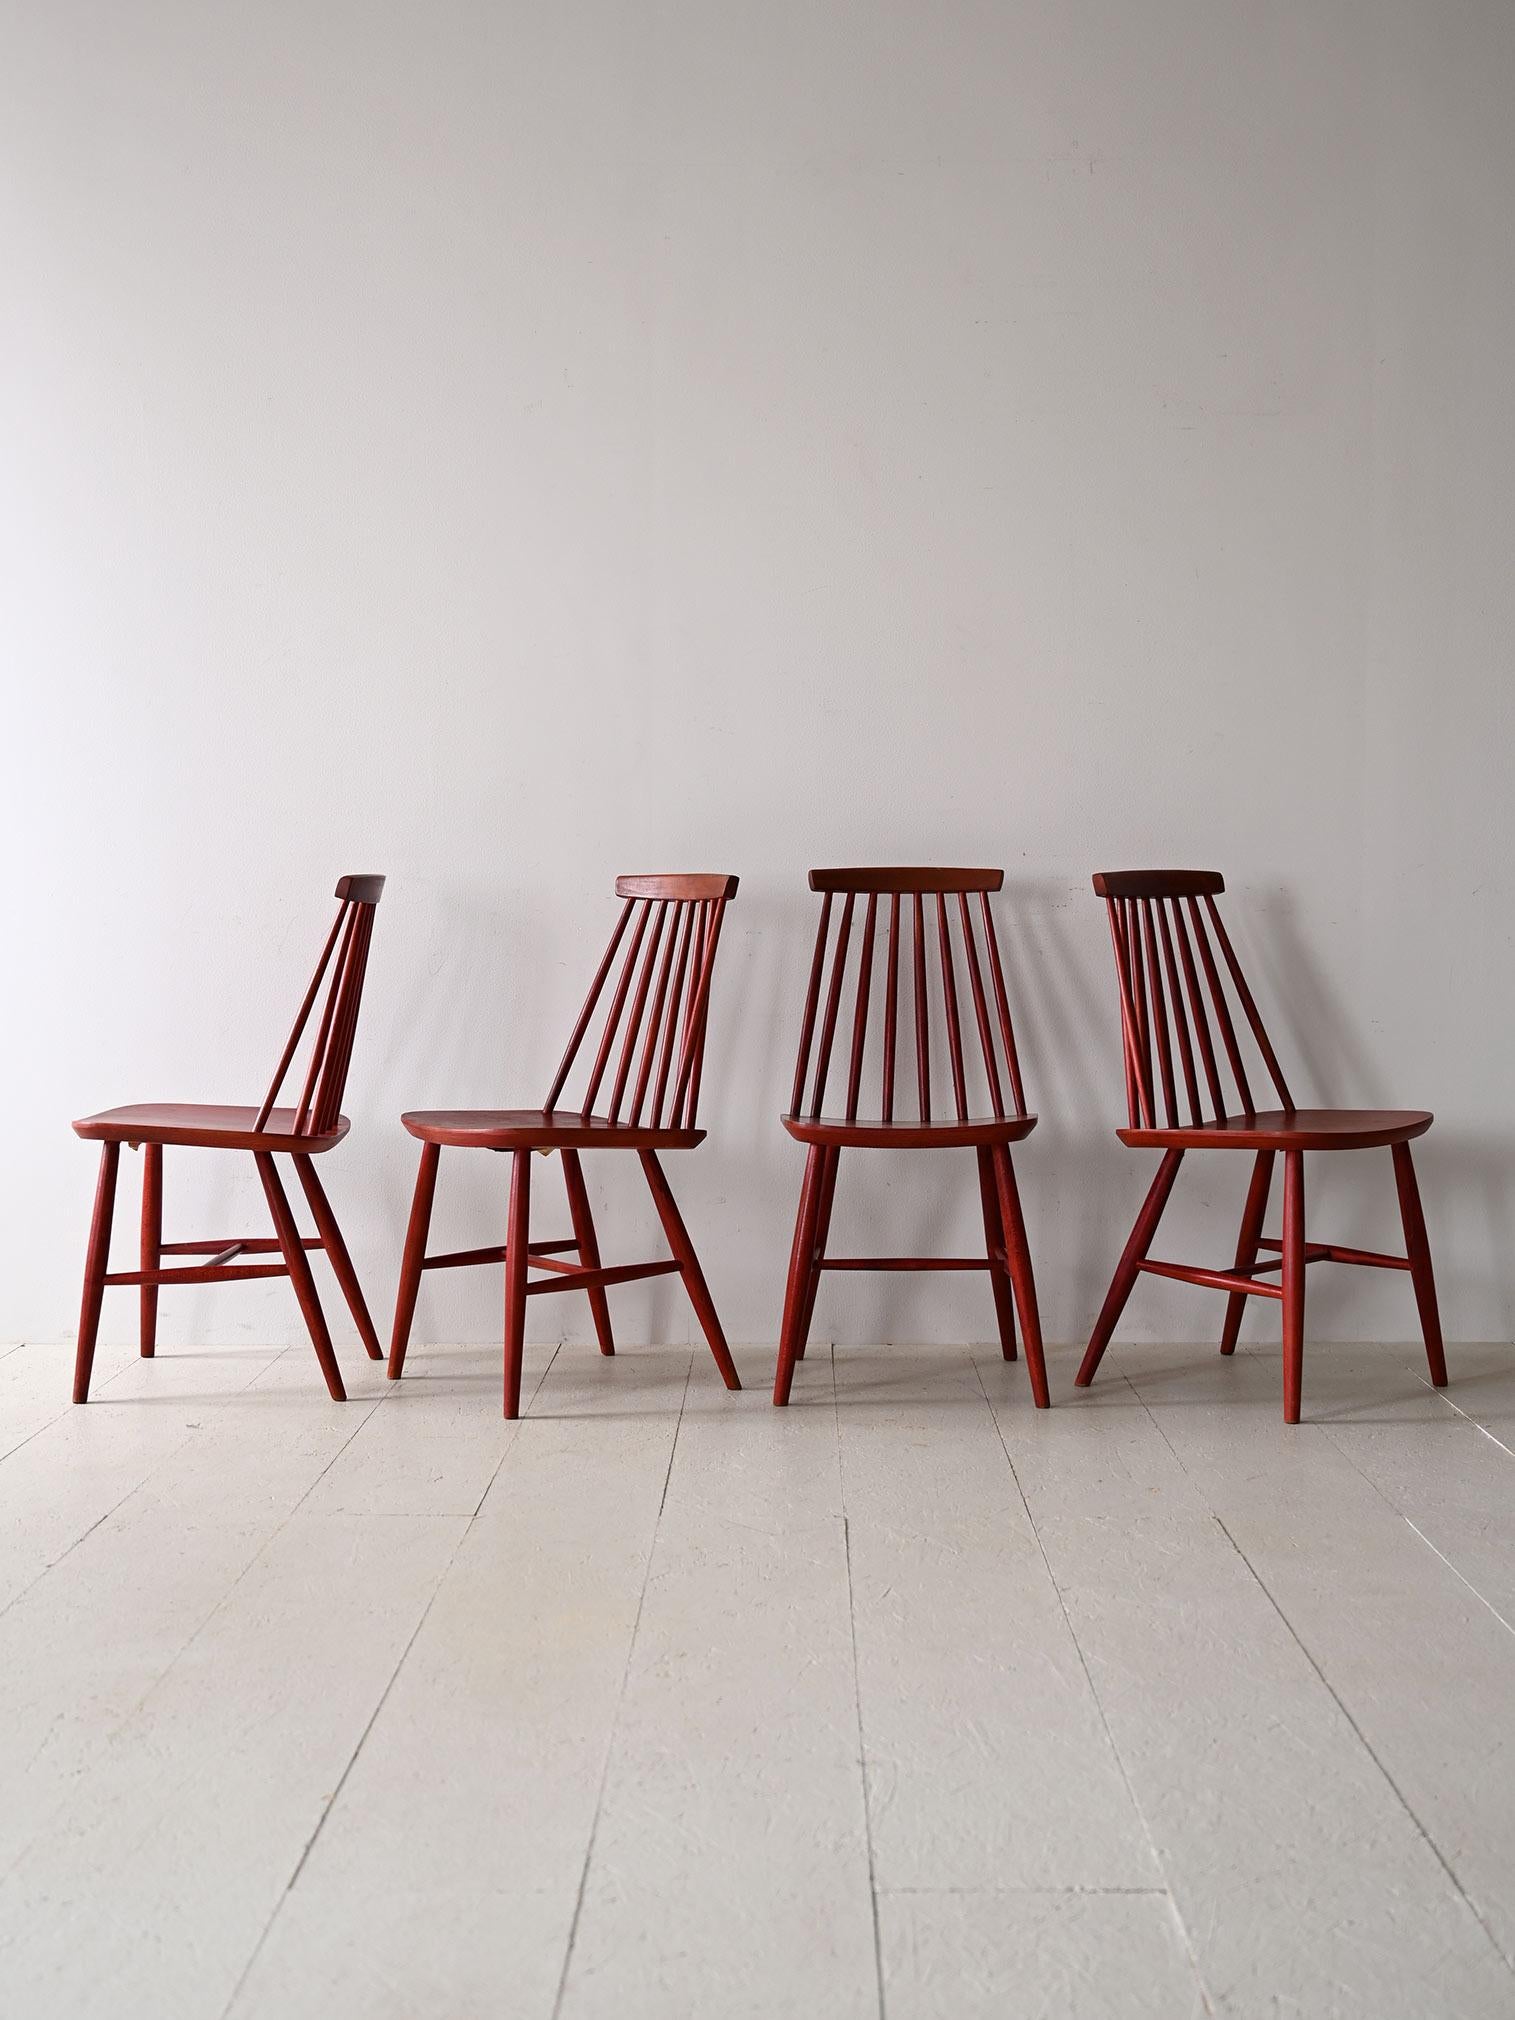 Ensemble de 4 chaises en bois originales des années 1960.

Ce modèle de chaise typique des maisons scandinaves se distingue par son dossier en lattes de bois effilées. 
Avec leur design moderne et leur couleur rouge, ils sont parfaits pour donner du